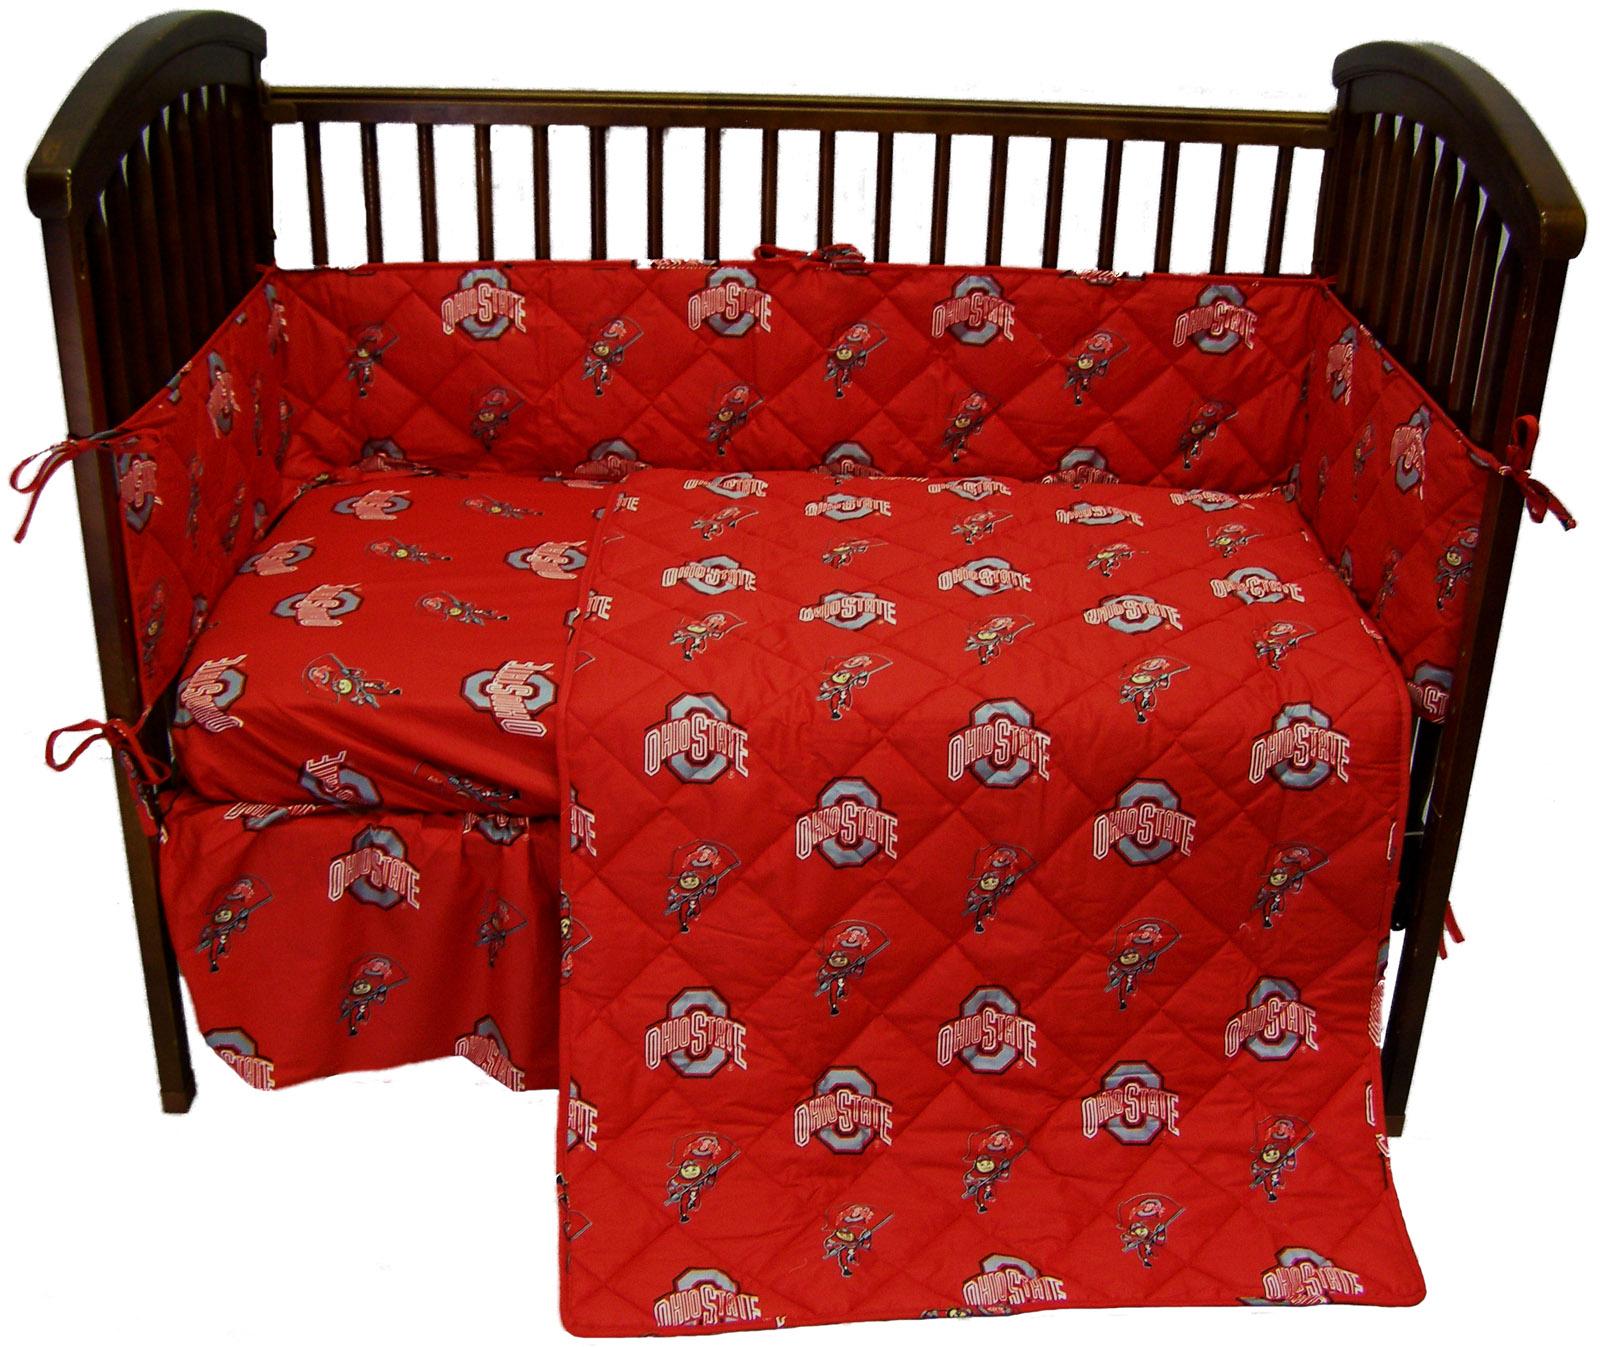 red crib bedding